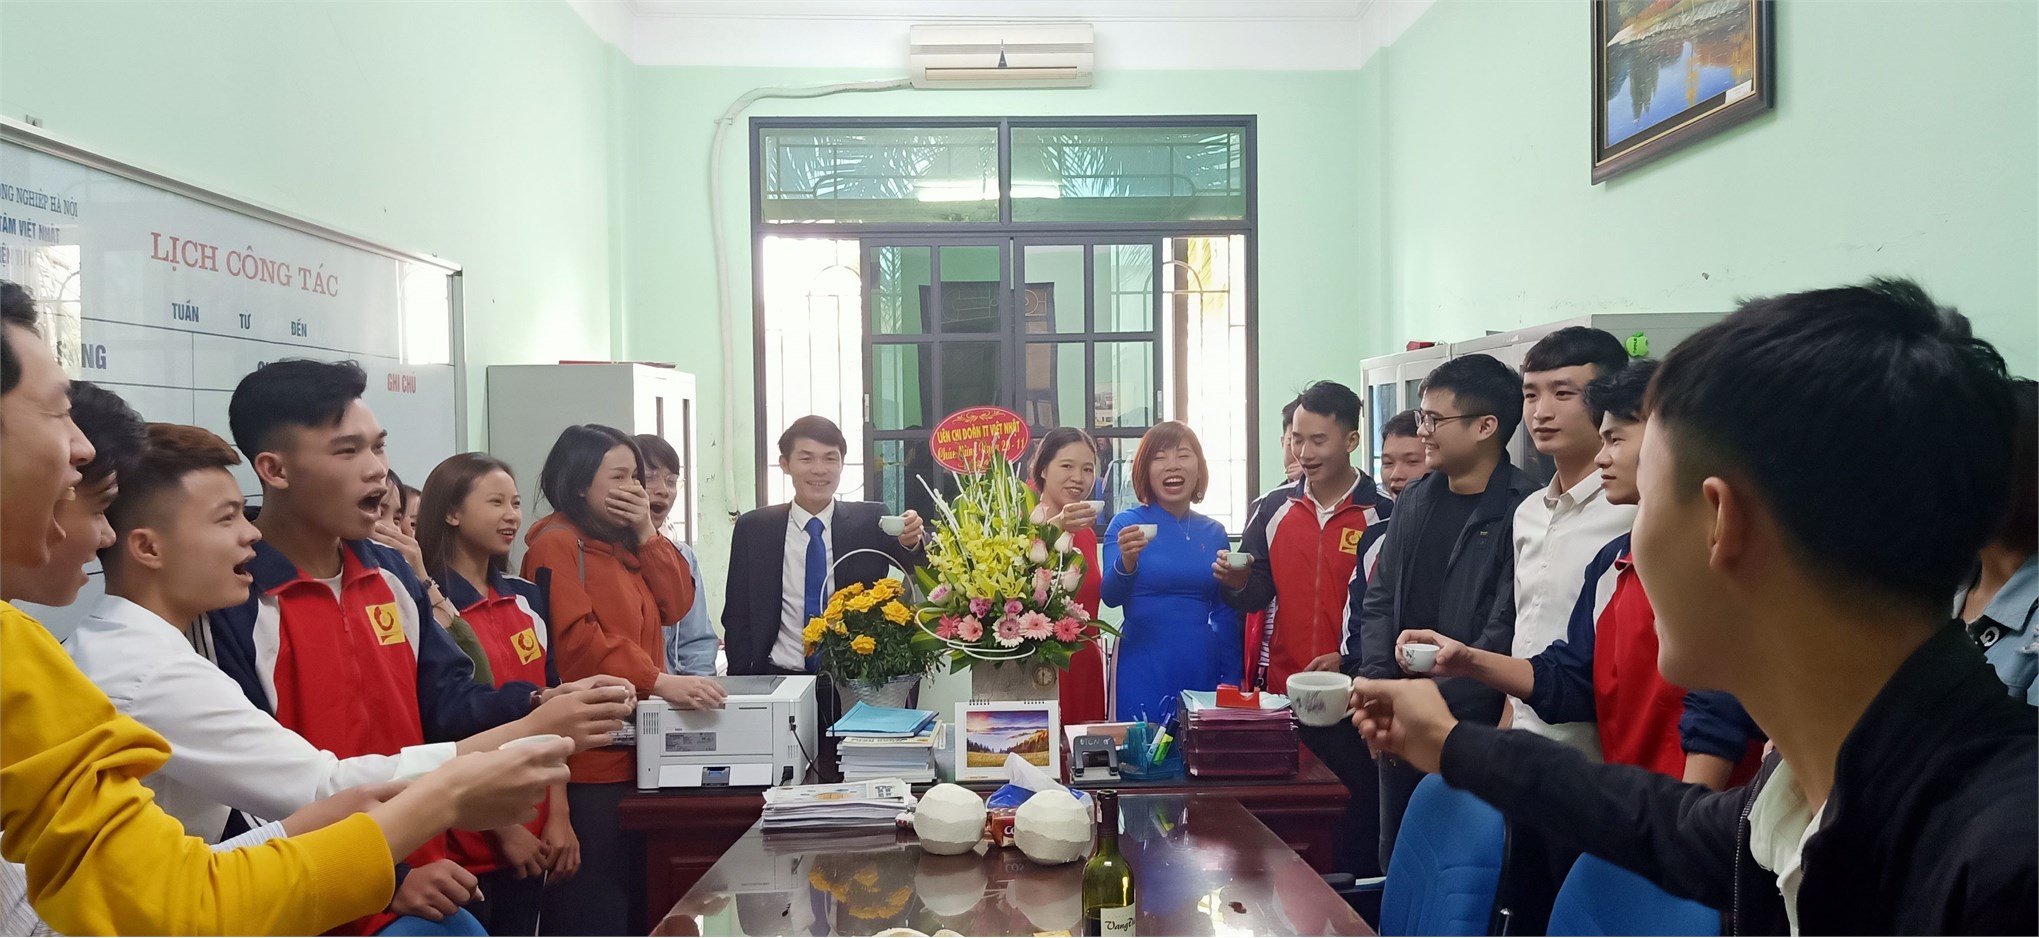 Trung tâm Việt Nhật tổ chức kỷ niệm 37 năm ngày Nhà giáo Việt Nam (20/11/1982 – 20/11/2019)